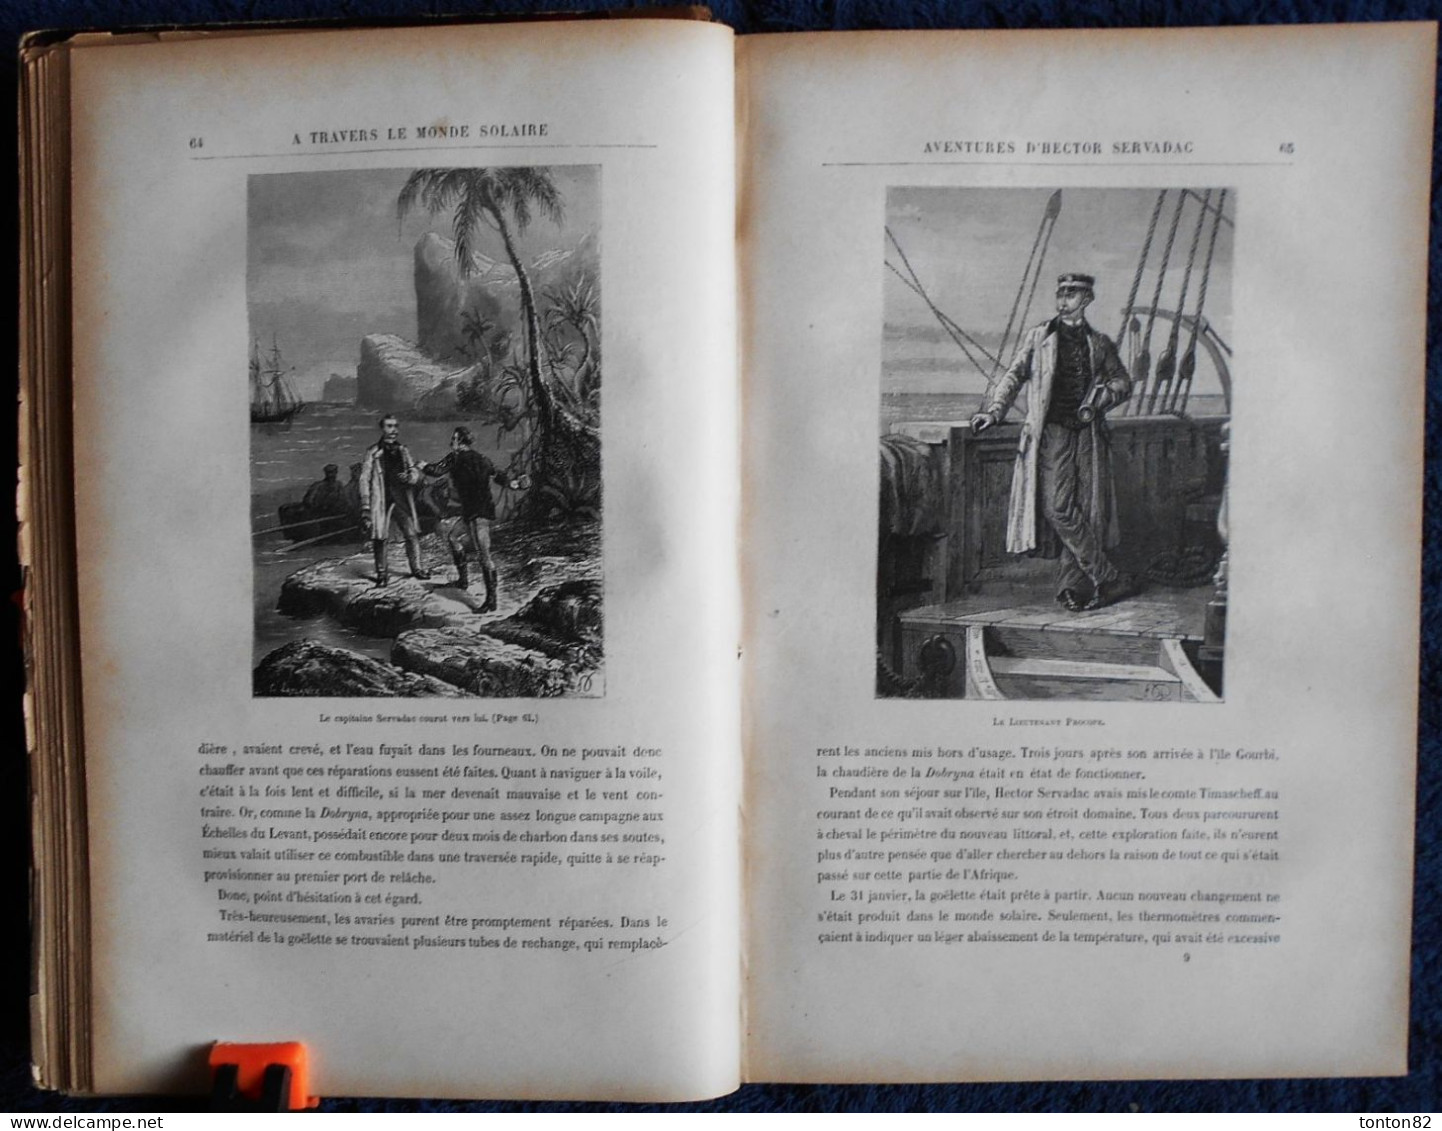 Jules Verne - Hector Servadac - Voyages et Aventures à travers le Monde Solaire - J. HETZEL et Cie .